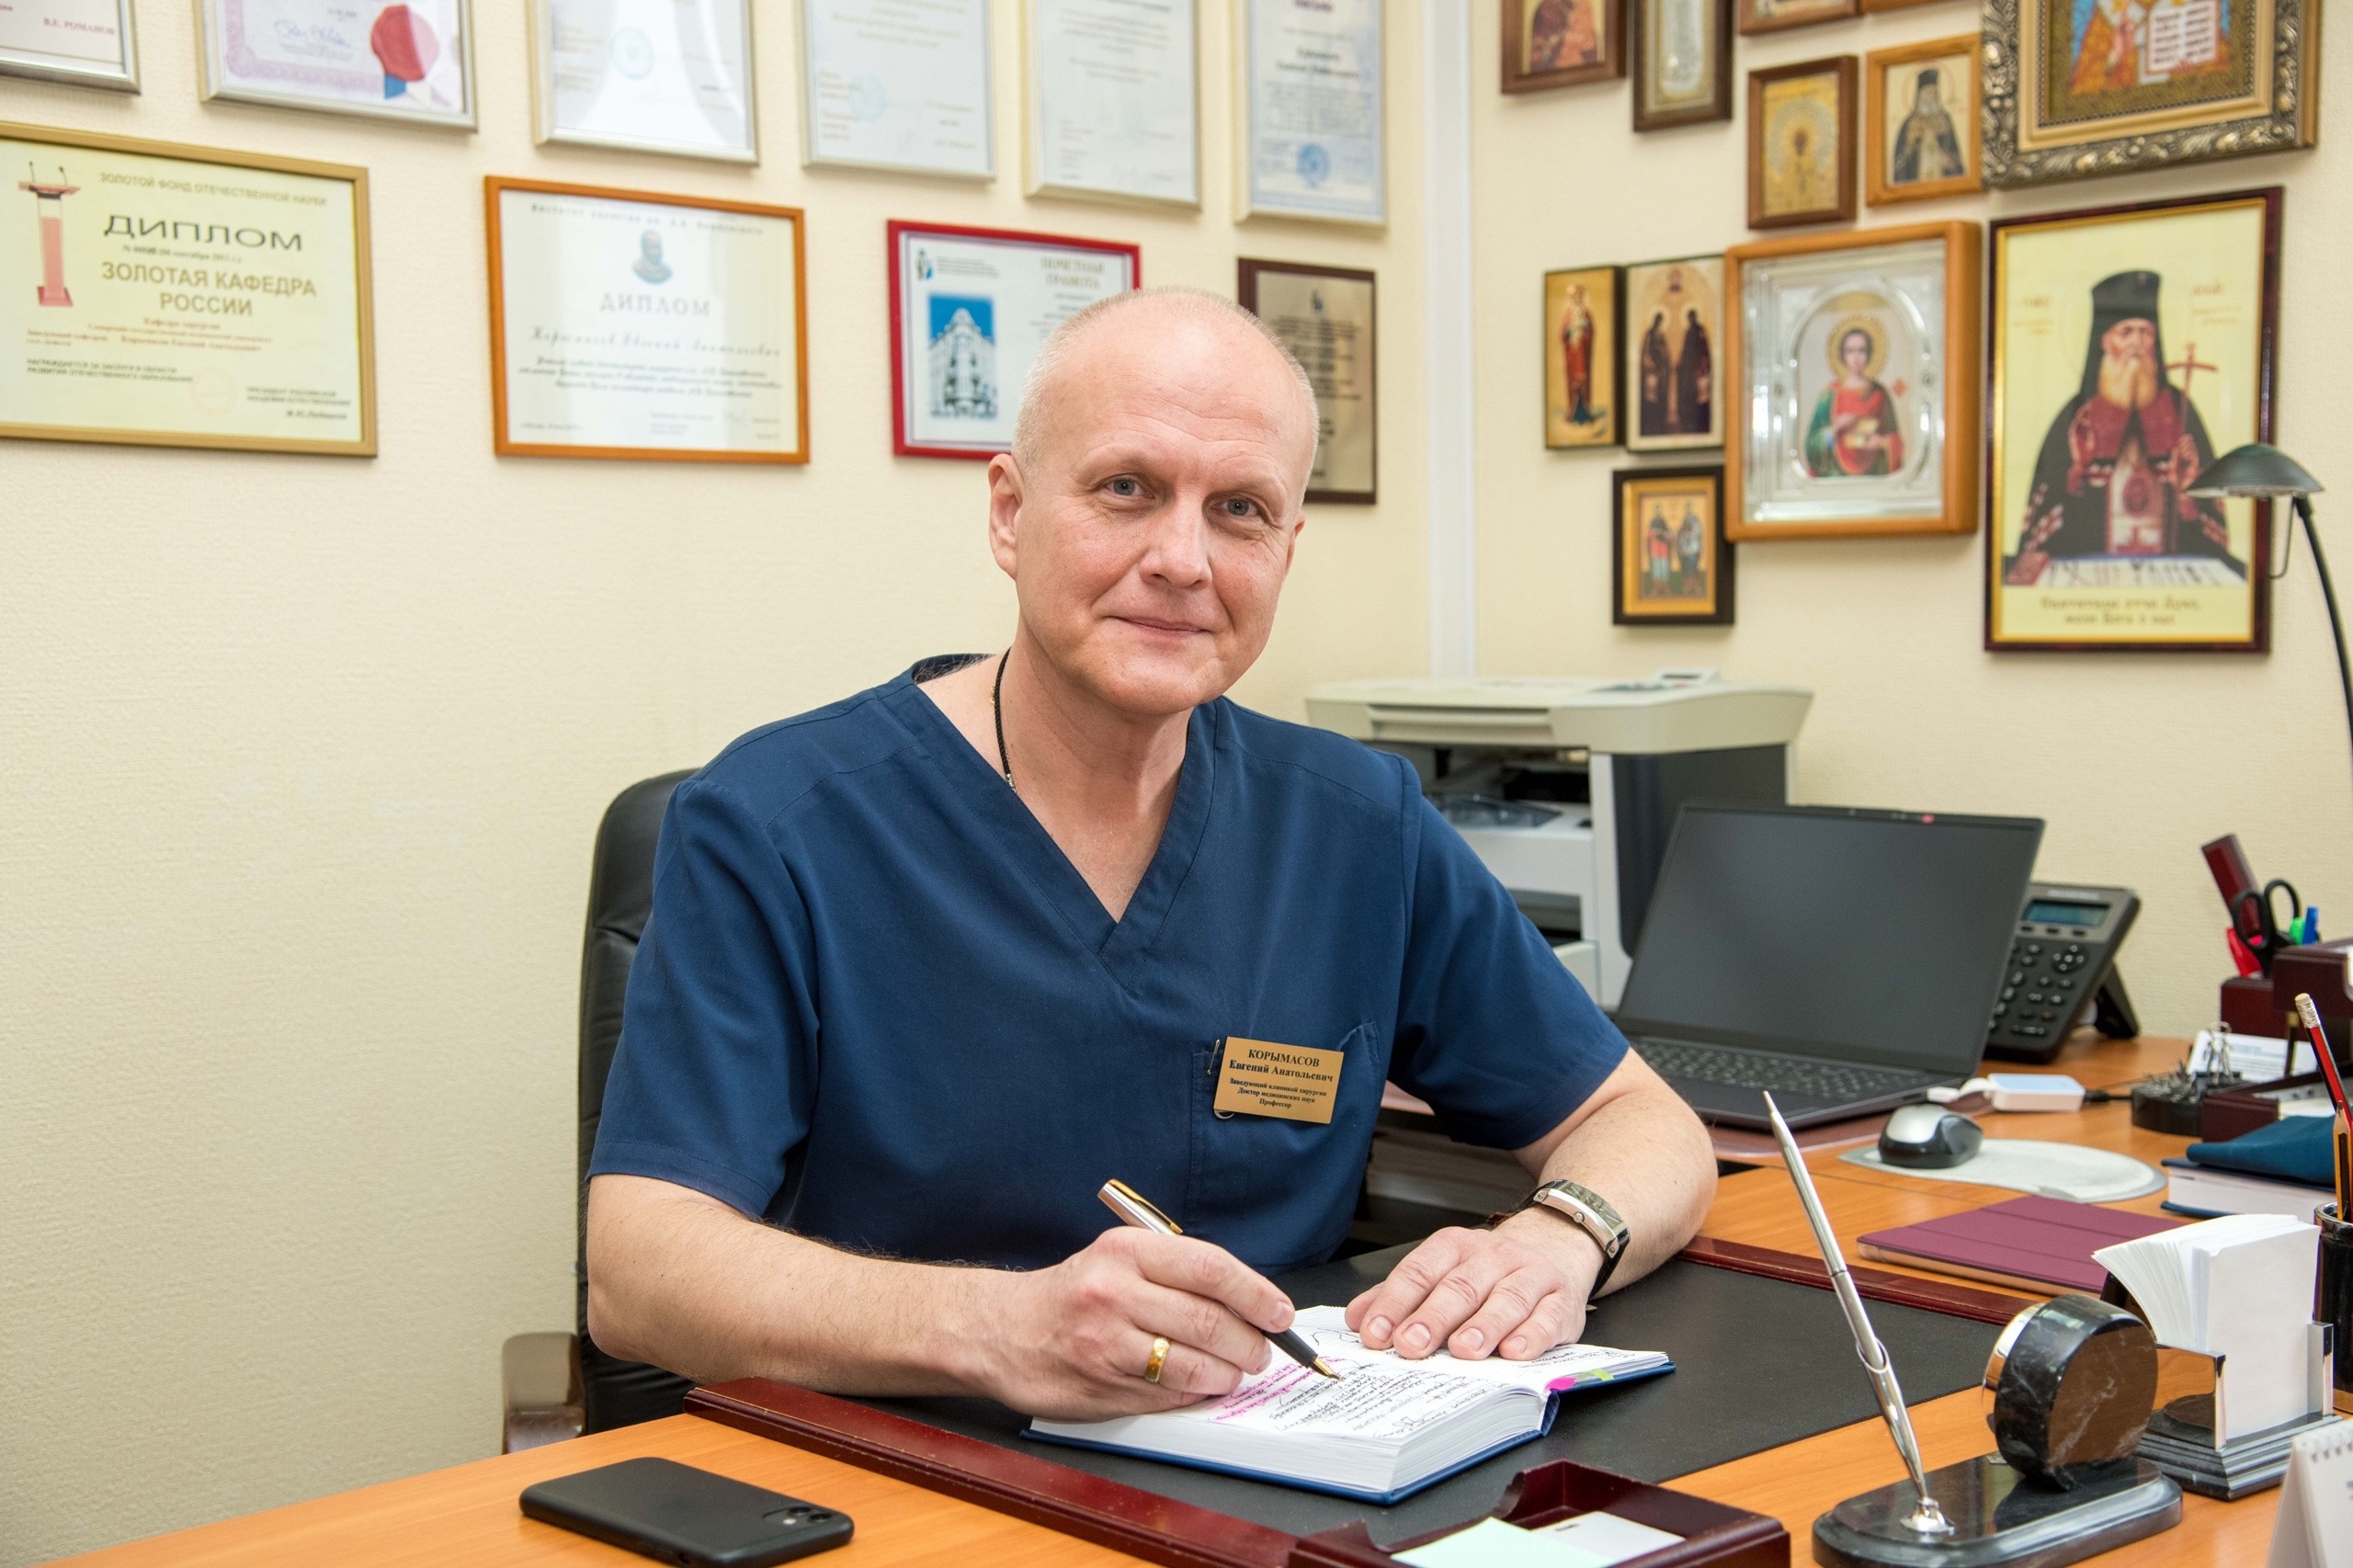 Поздравляем Евгения КОРЫМАСОВА с назначением главным внештатным специалистом хирургом и эндоскопистом Минздрава России в Приволжском федеральном округе!